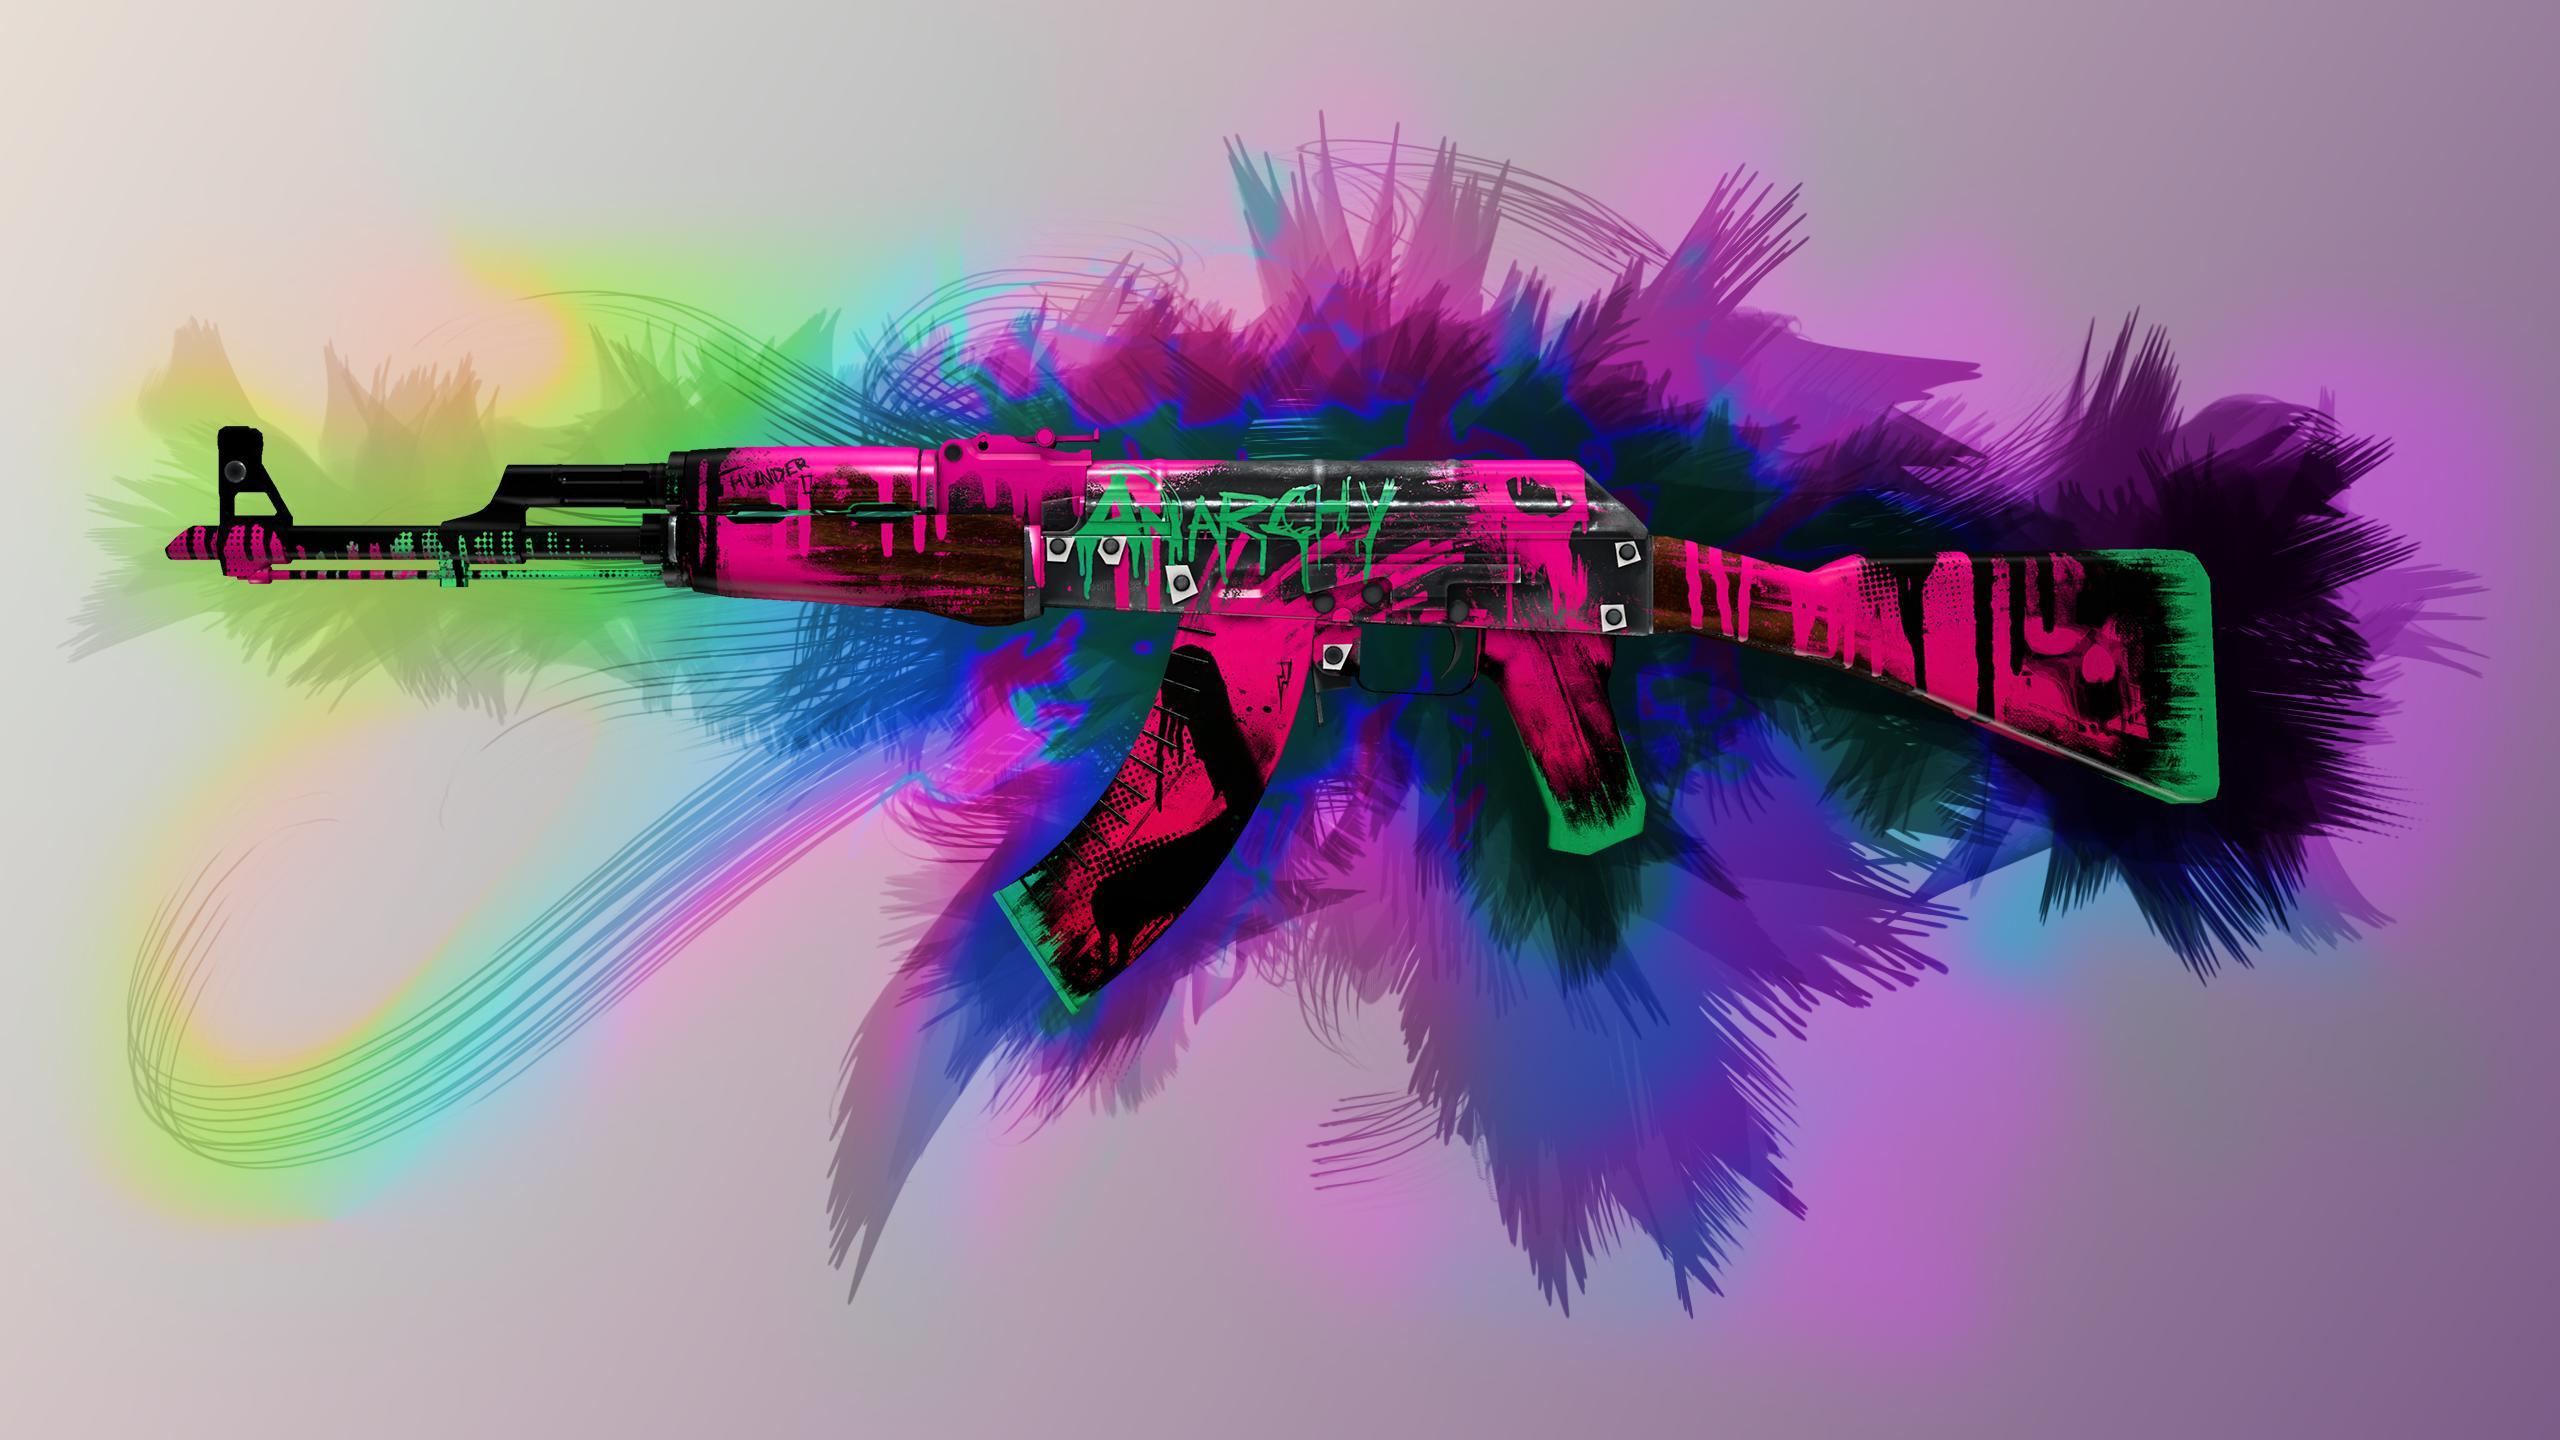 AK47 Neon Revolution Wallpaper